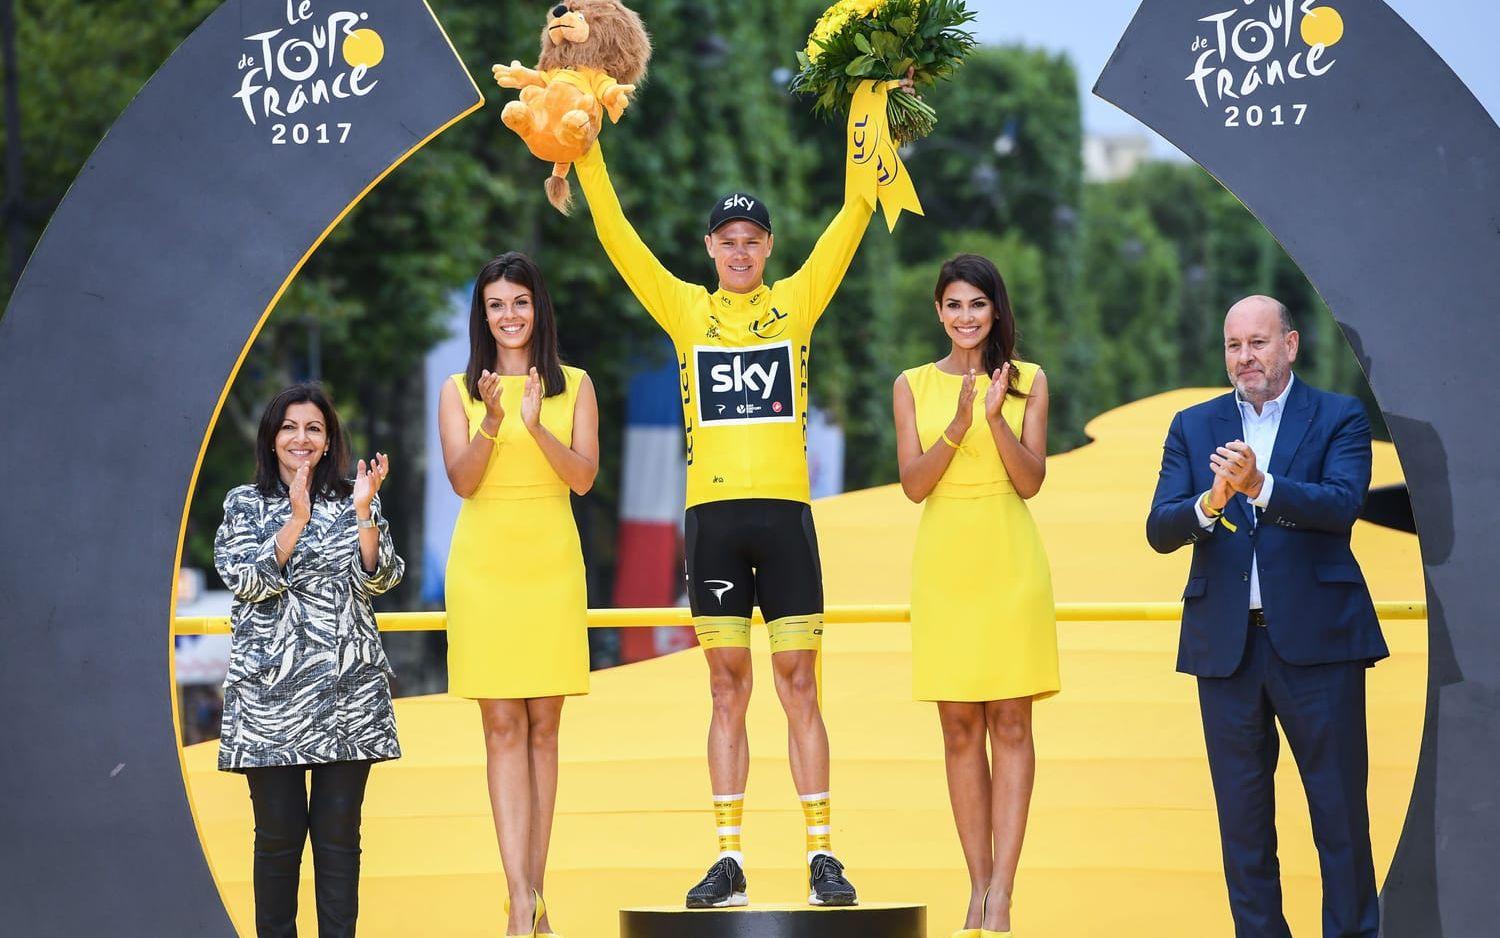 Christopher Froome vid segern av Tour de France 2017 tillsammans med podium girls.